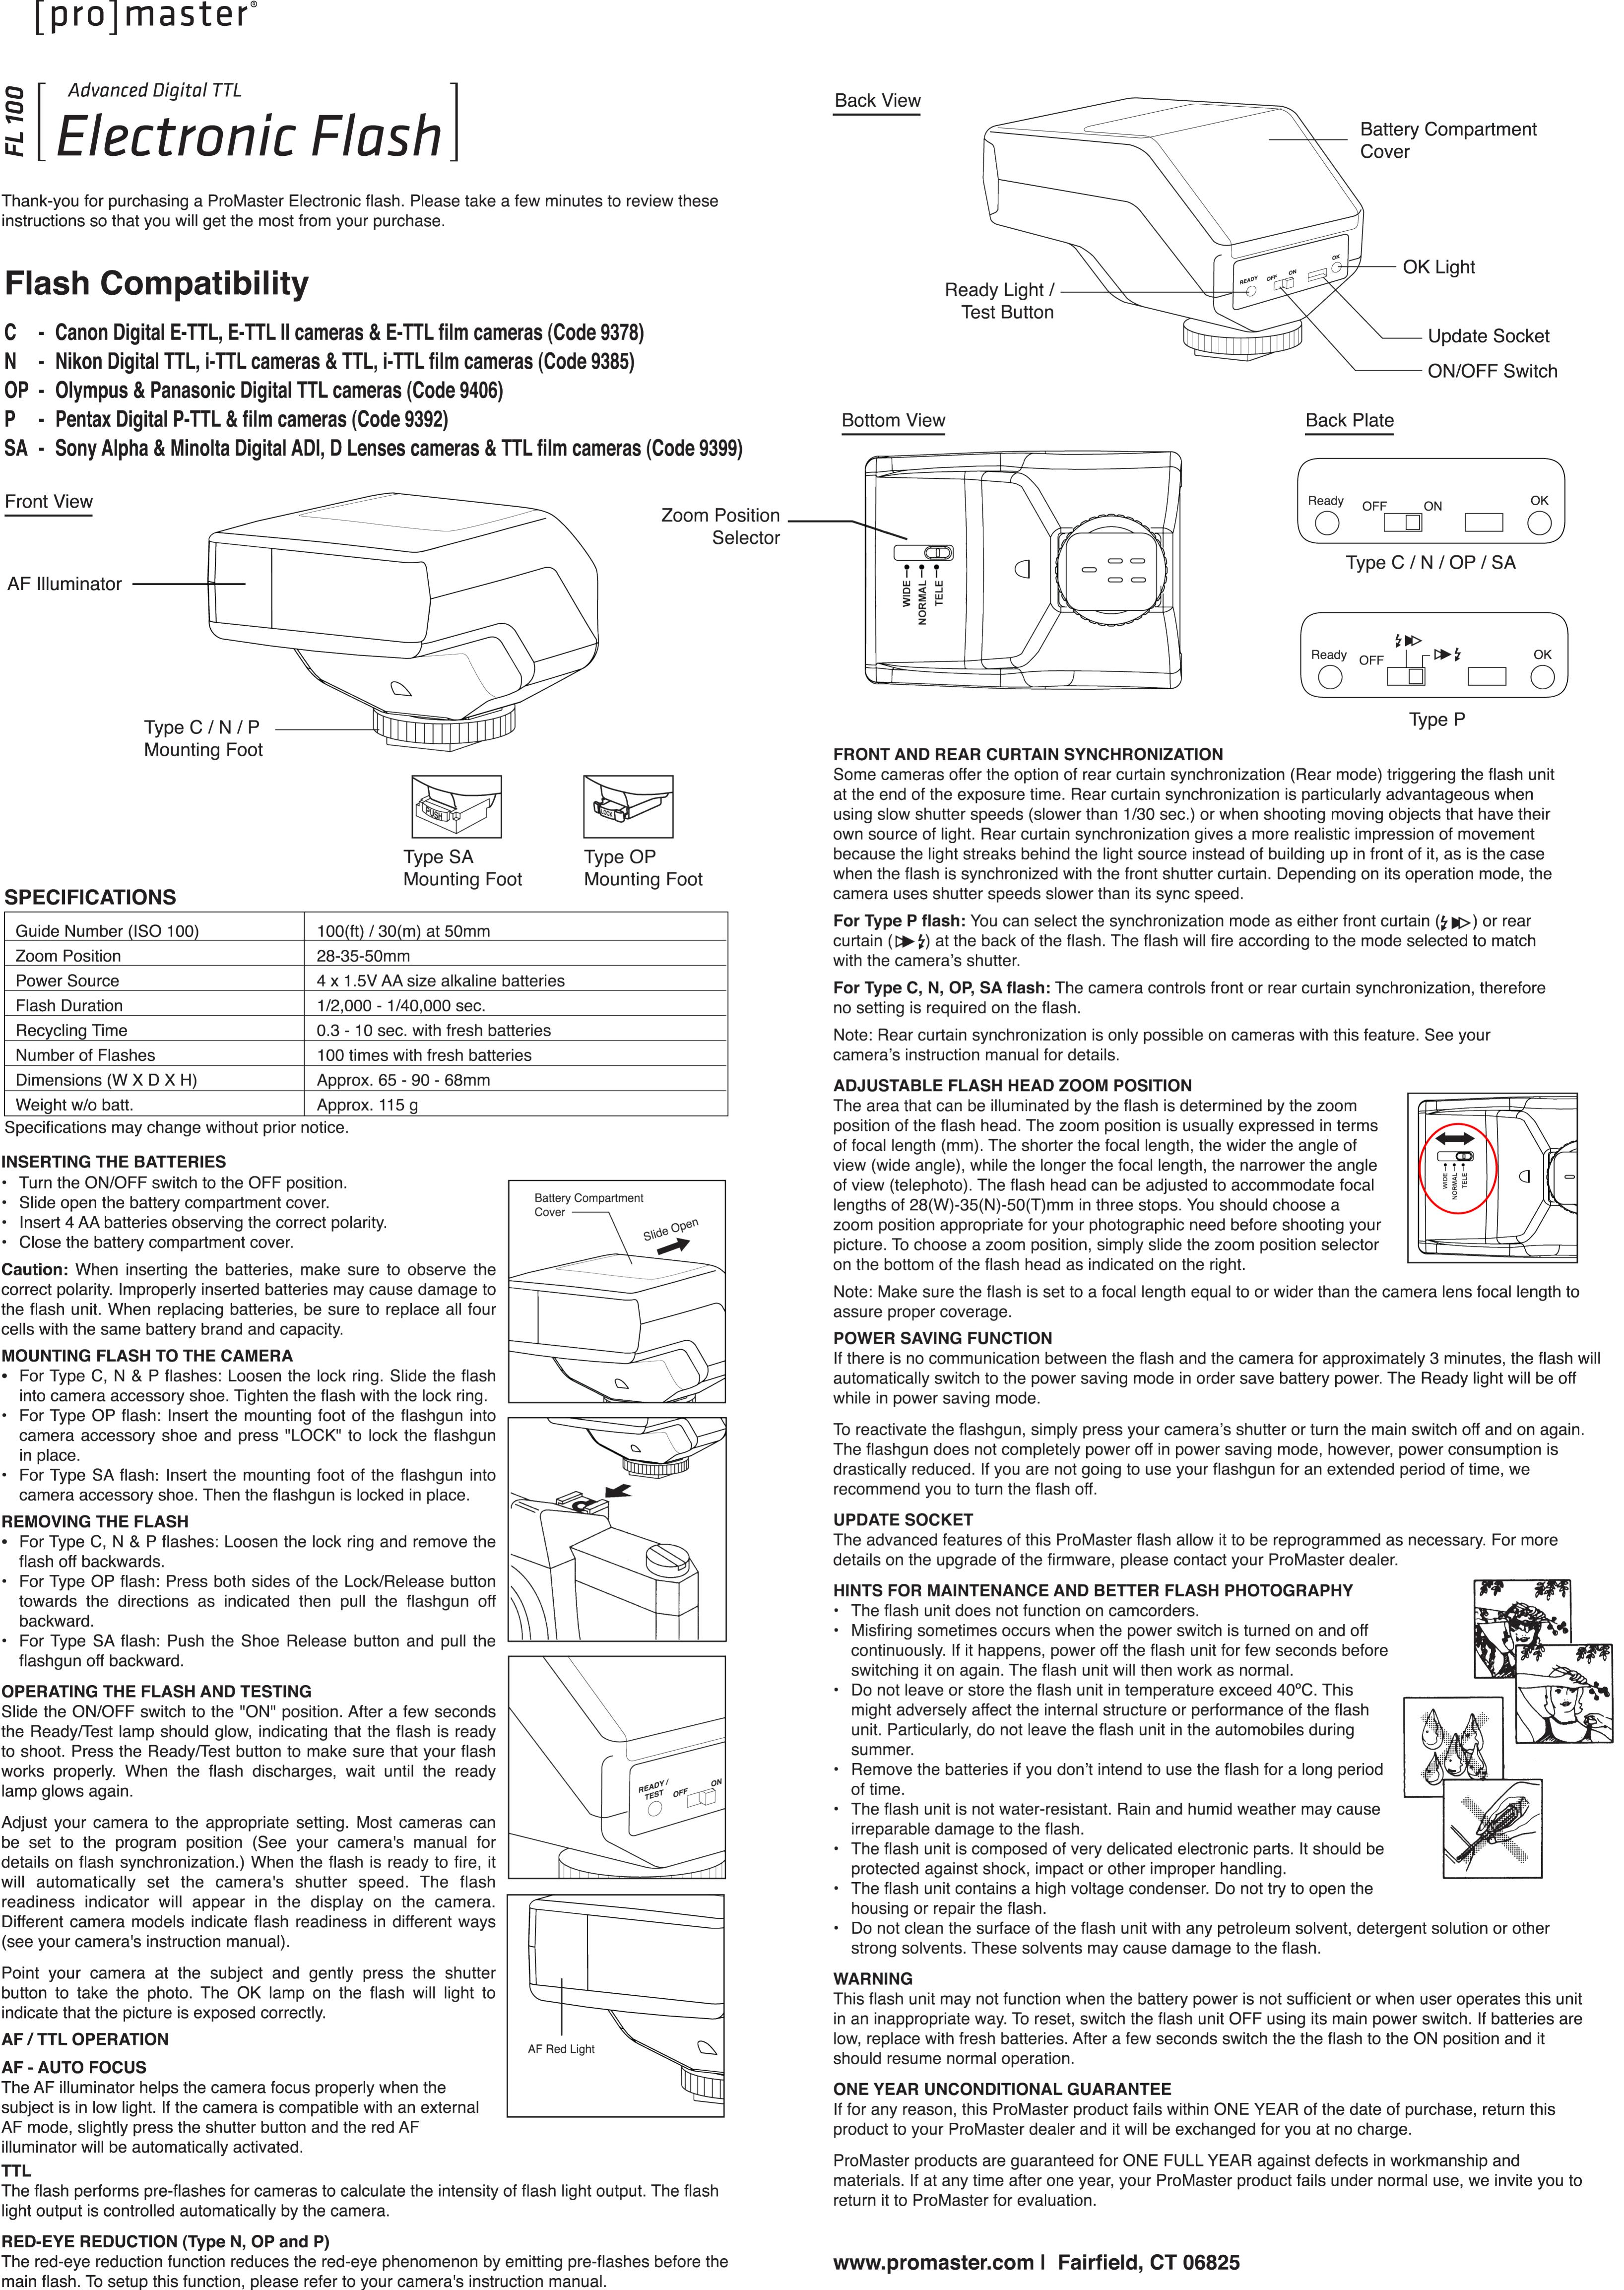 ProMaster FL100 (Canon) Camera Accessories User Manual